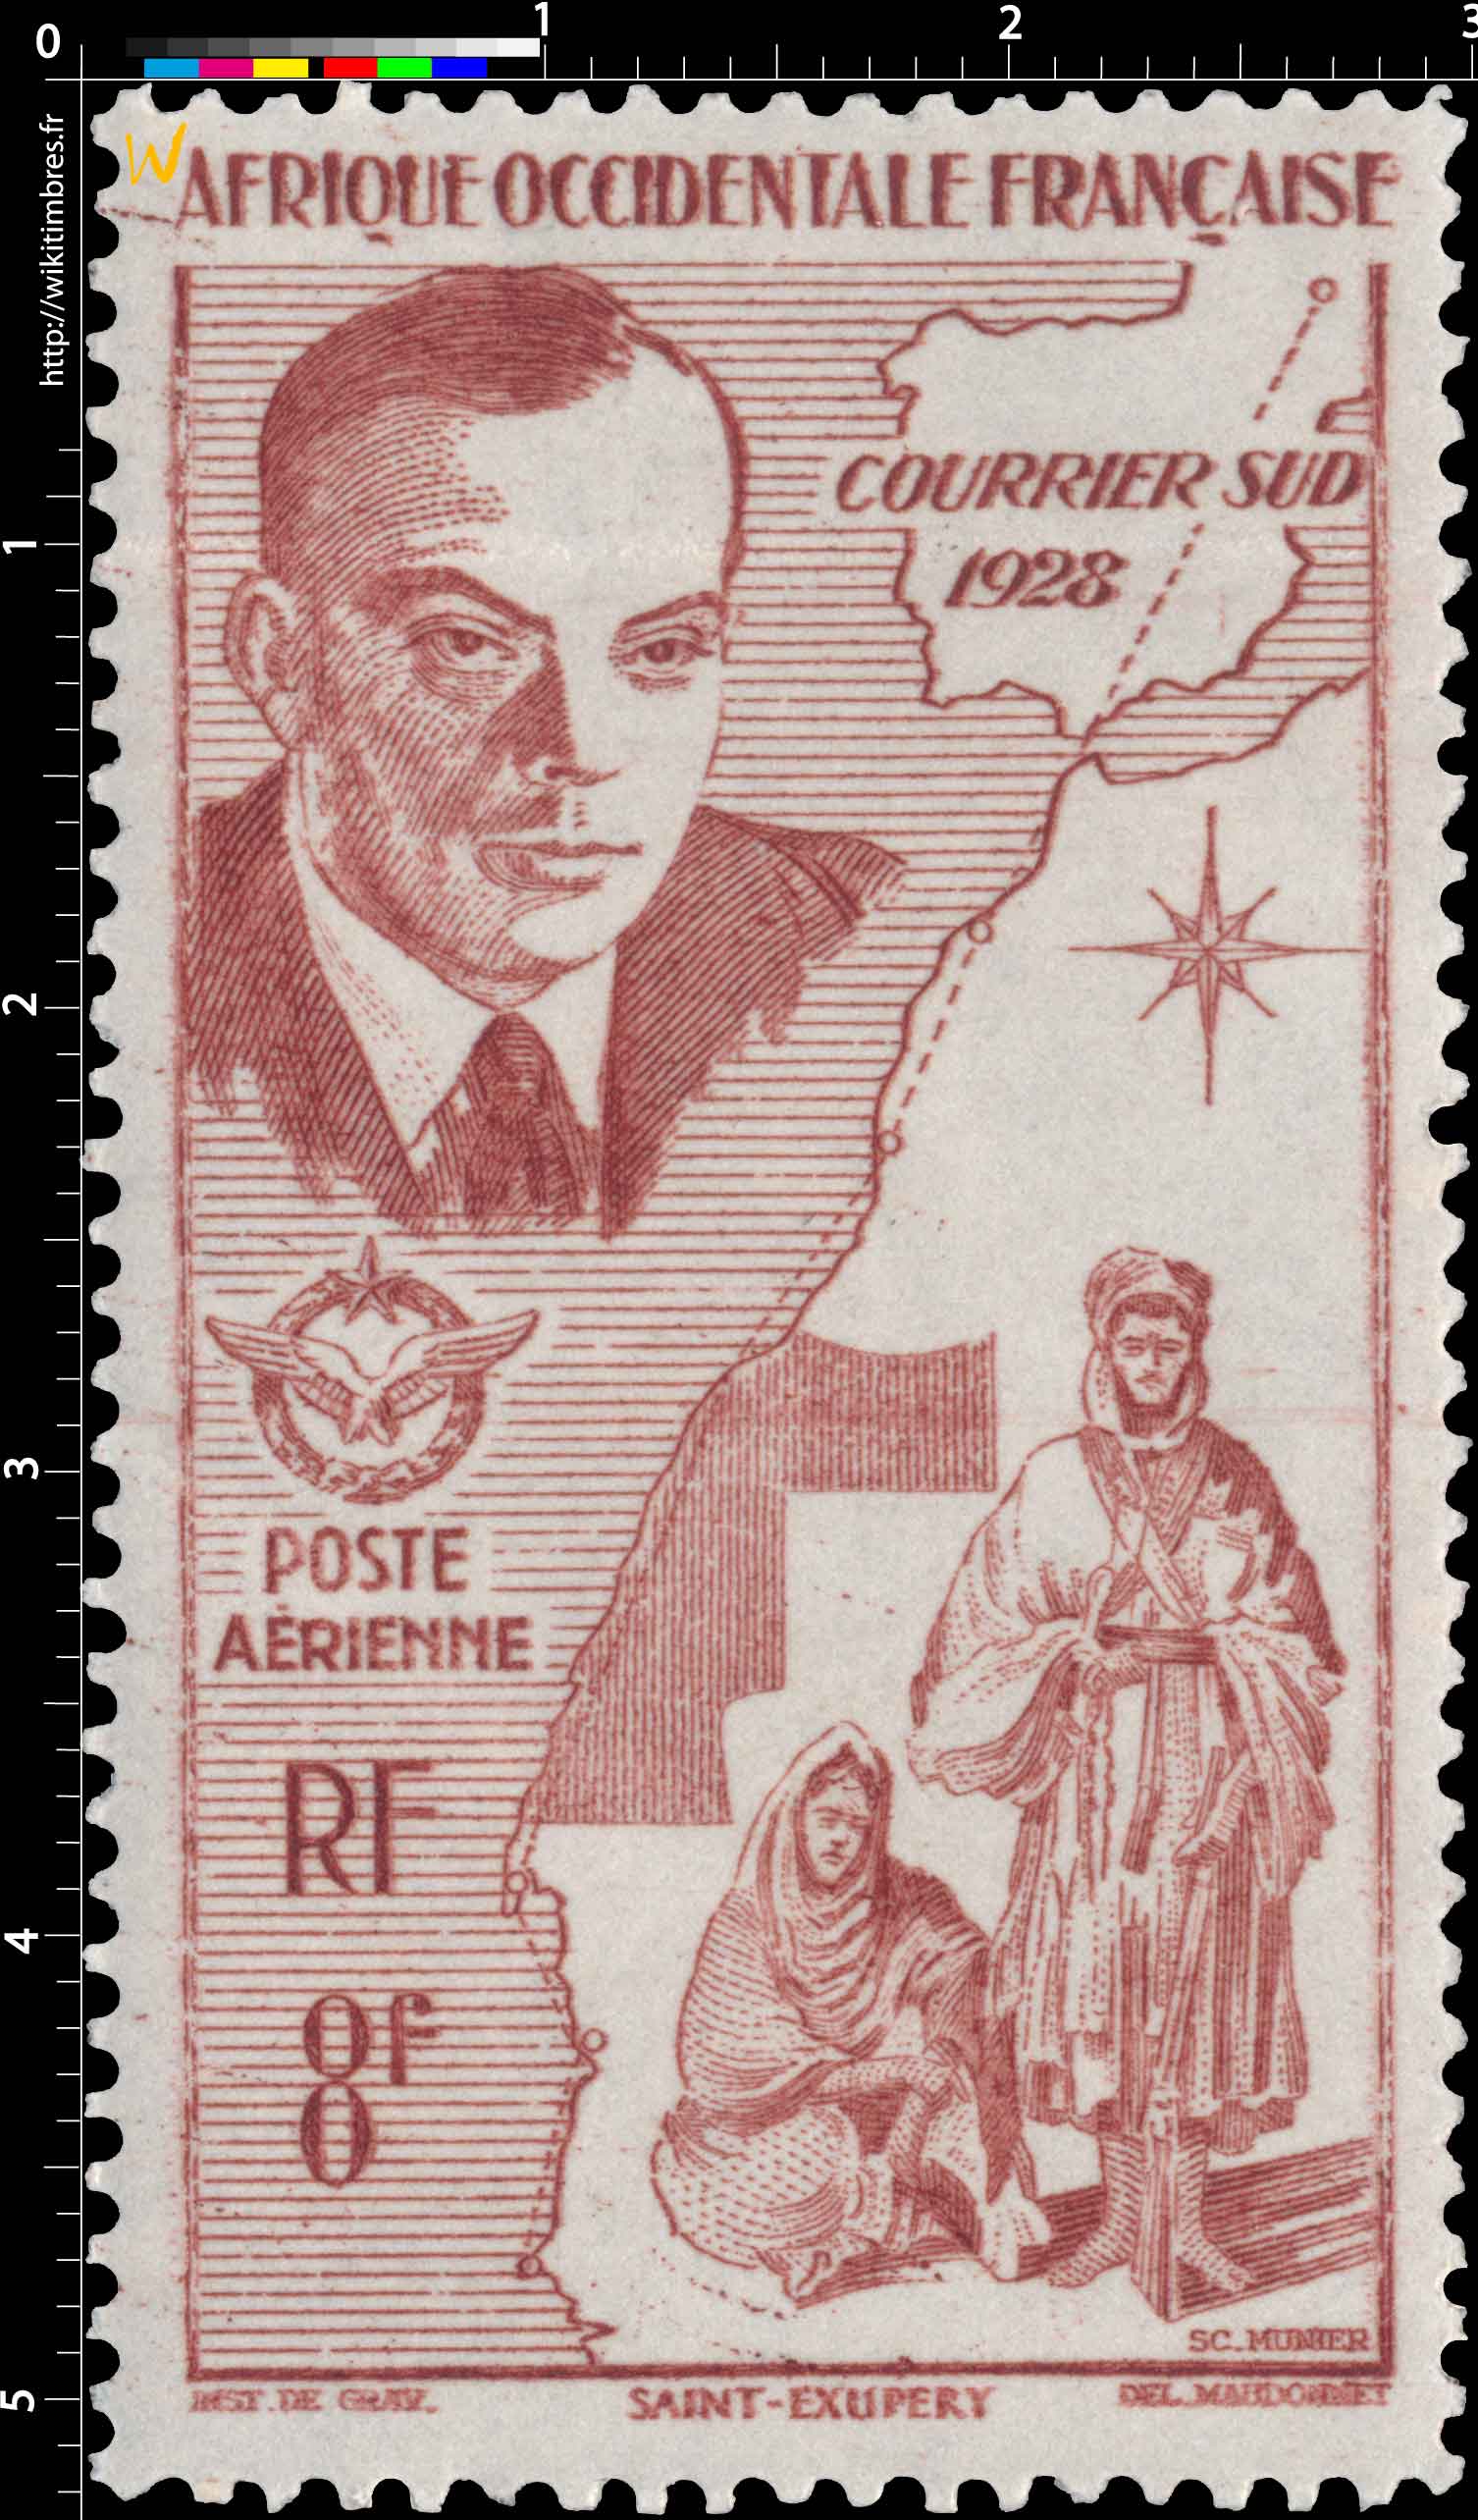 Afrique Occidentale Française - Courrier sud 1928 Saint Exupéry